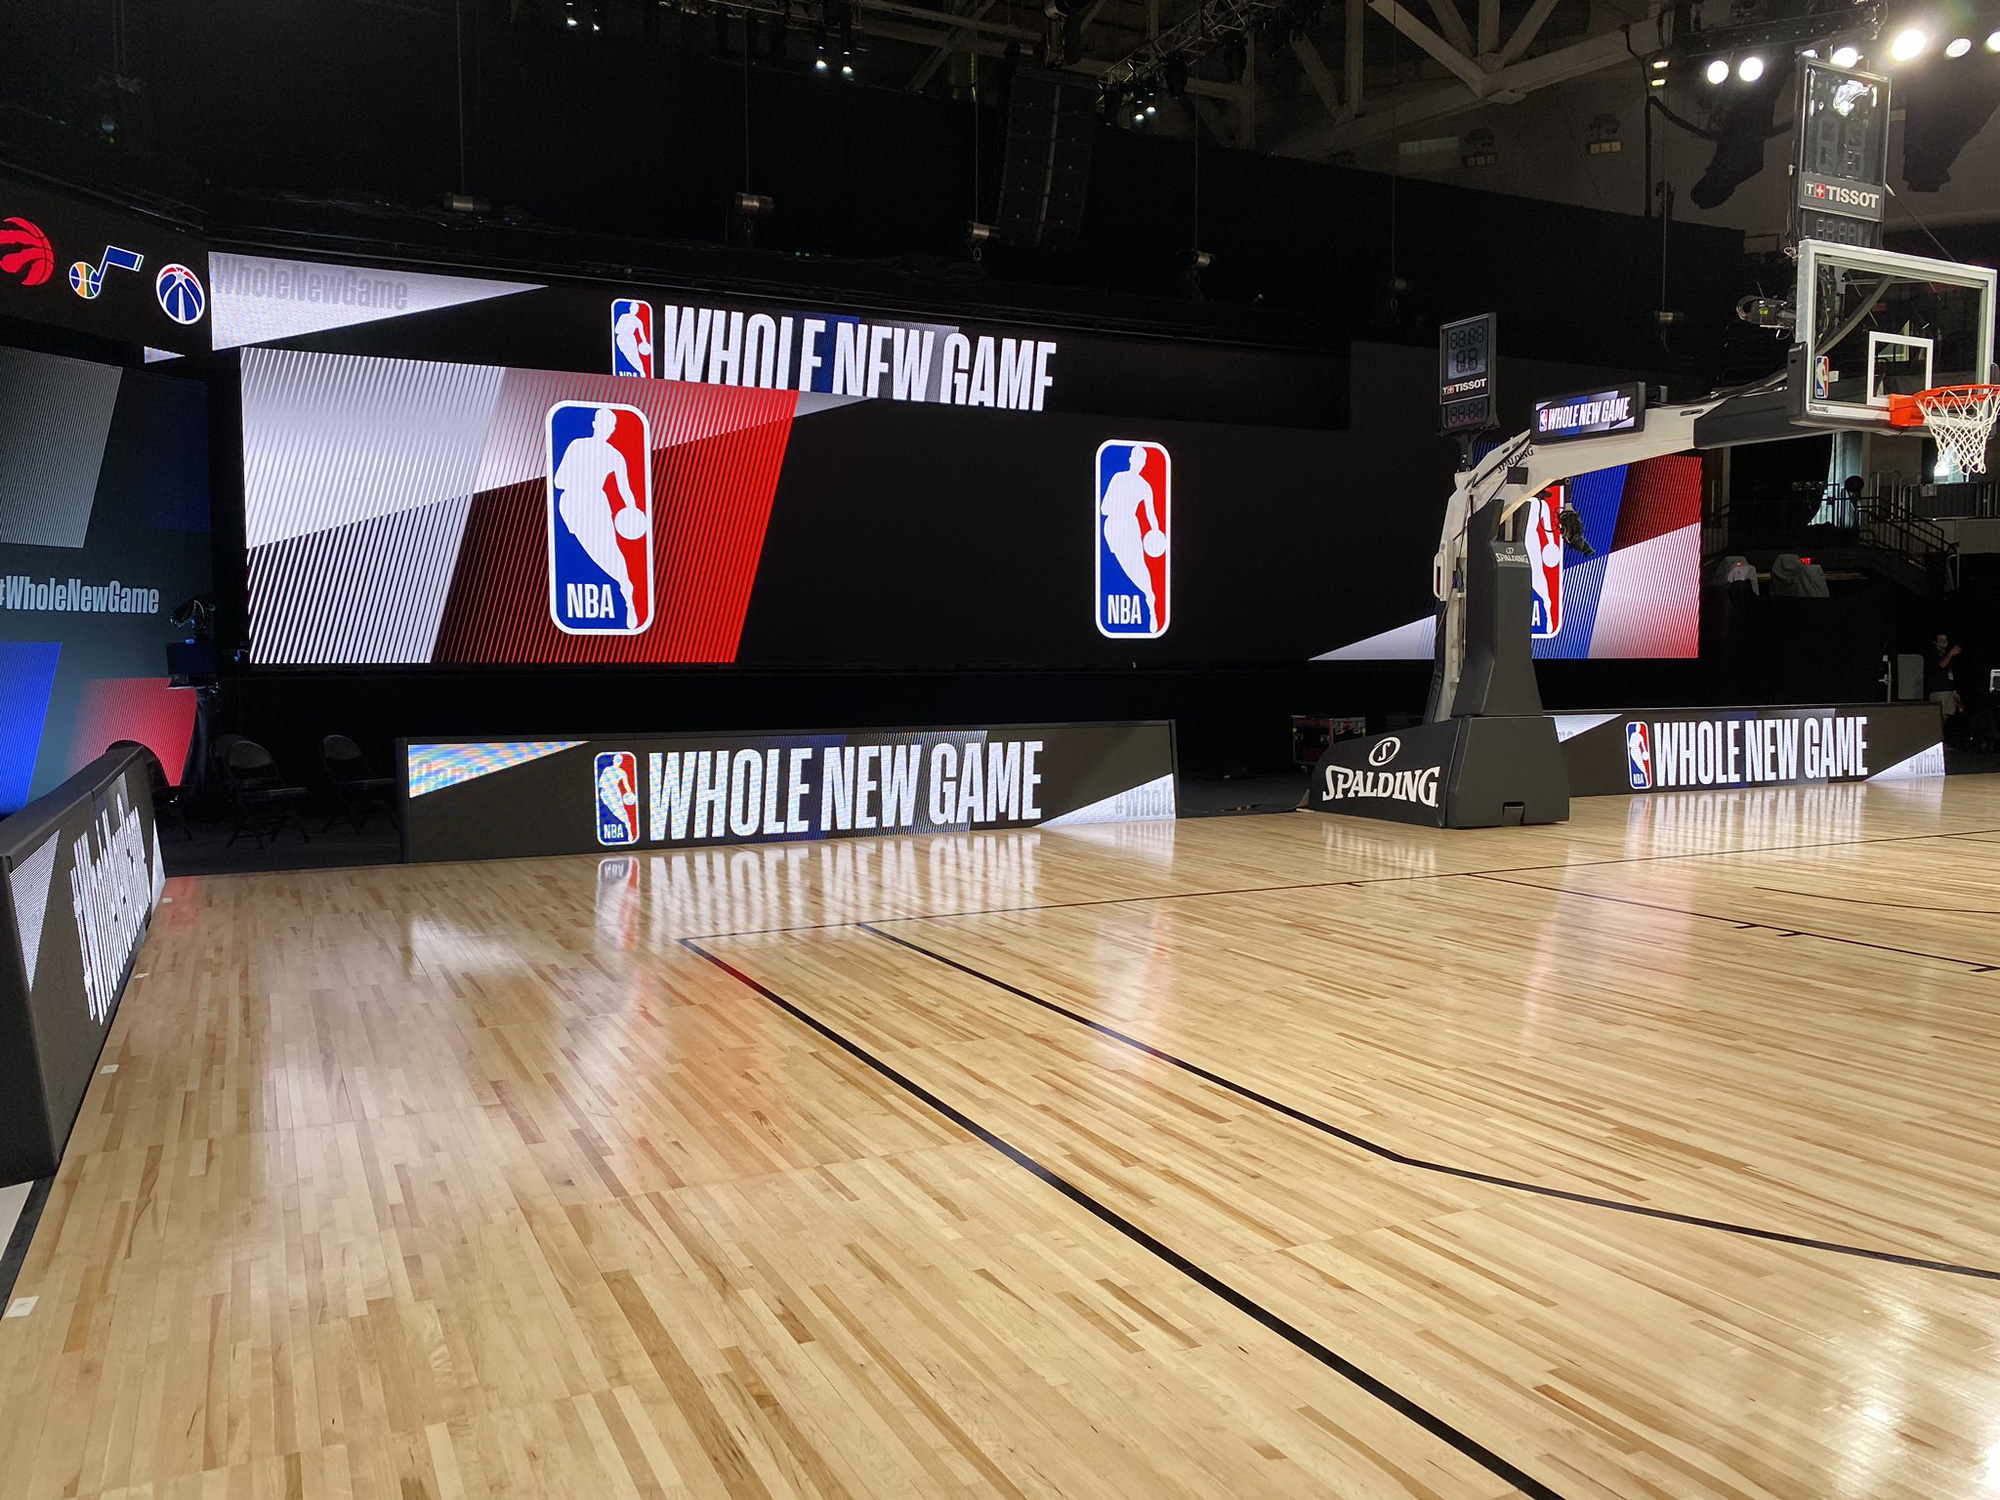 Lộ diện hình ảnh sân đấu chính thức của NBA trong khu cách ly Walt Disney World - Ảnh 8.